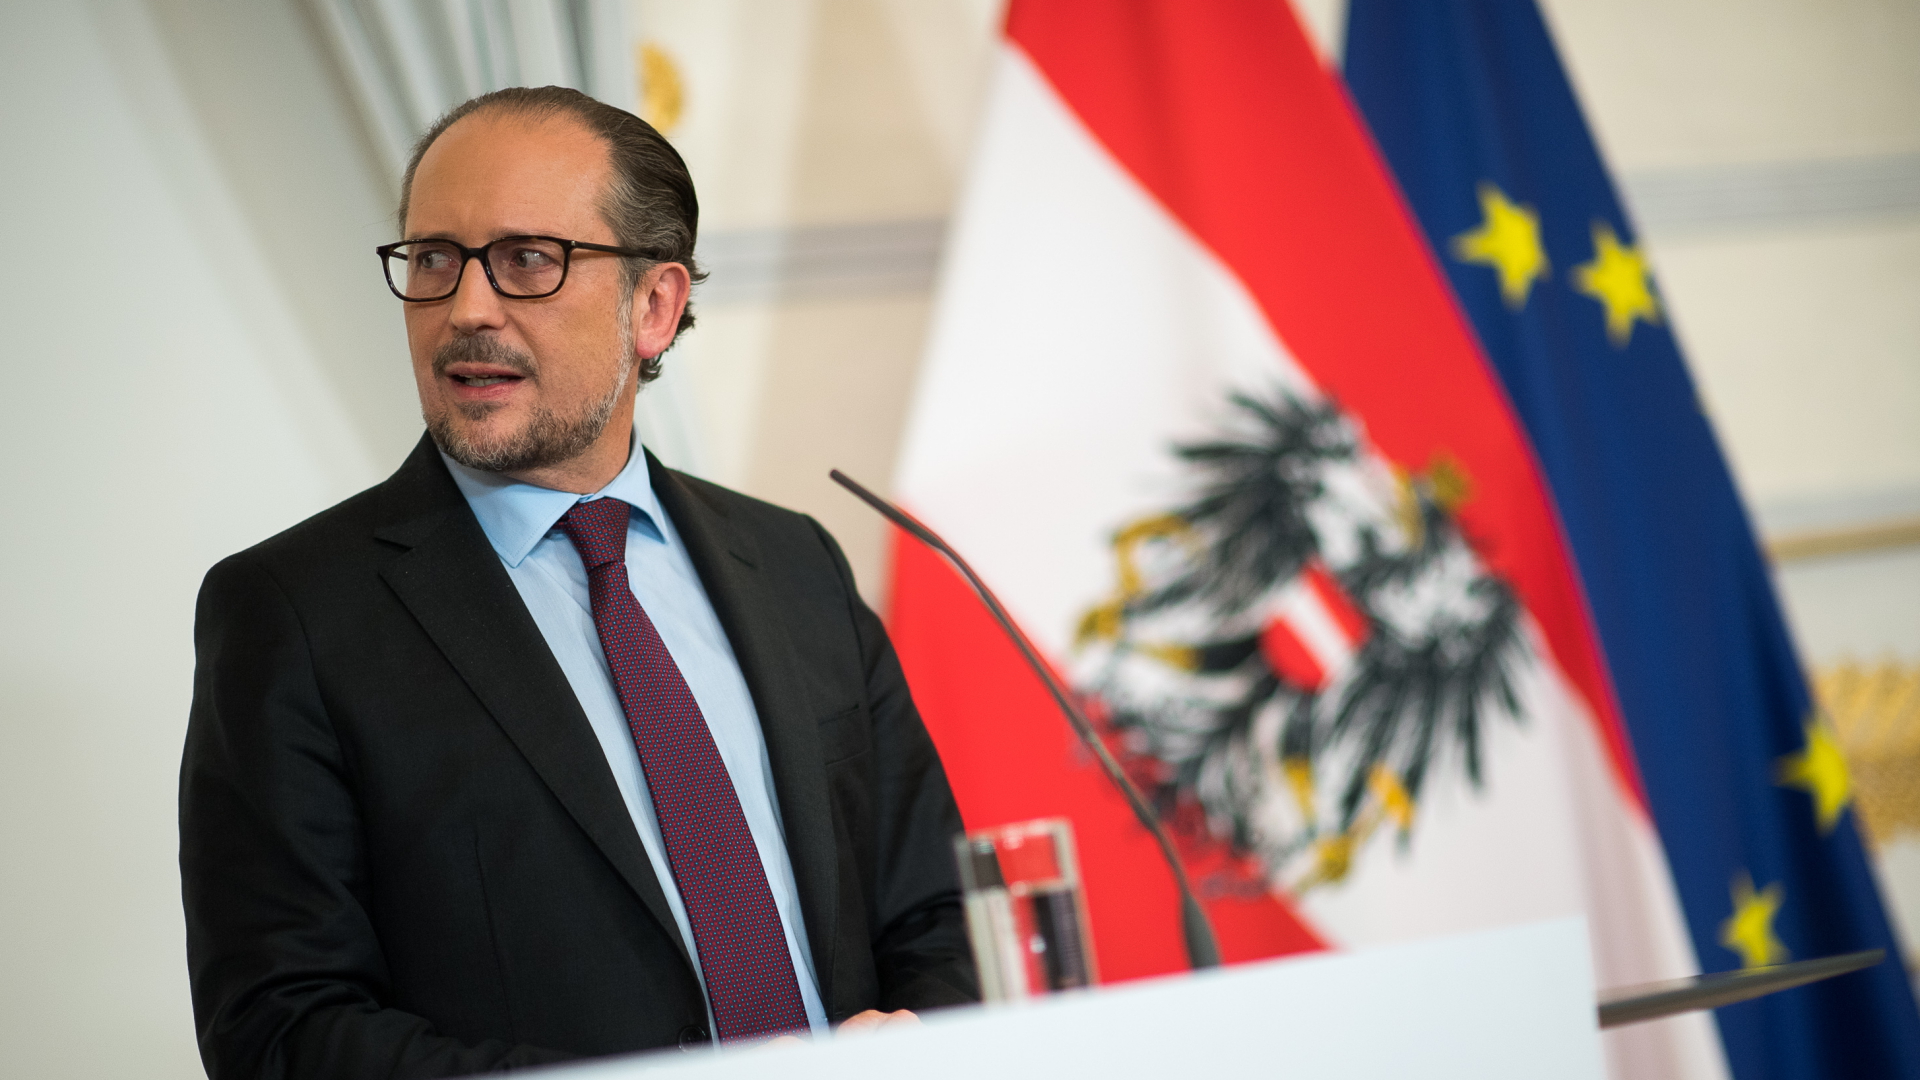 Österreichs Bundeskanzler Schallenberg bei einer Pressekonferenz. | dpa